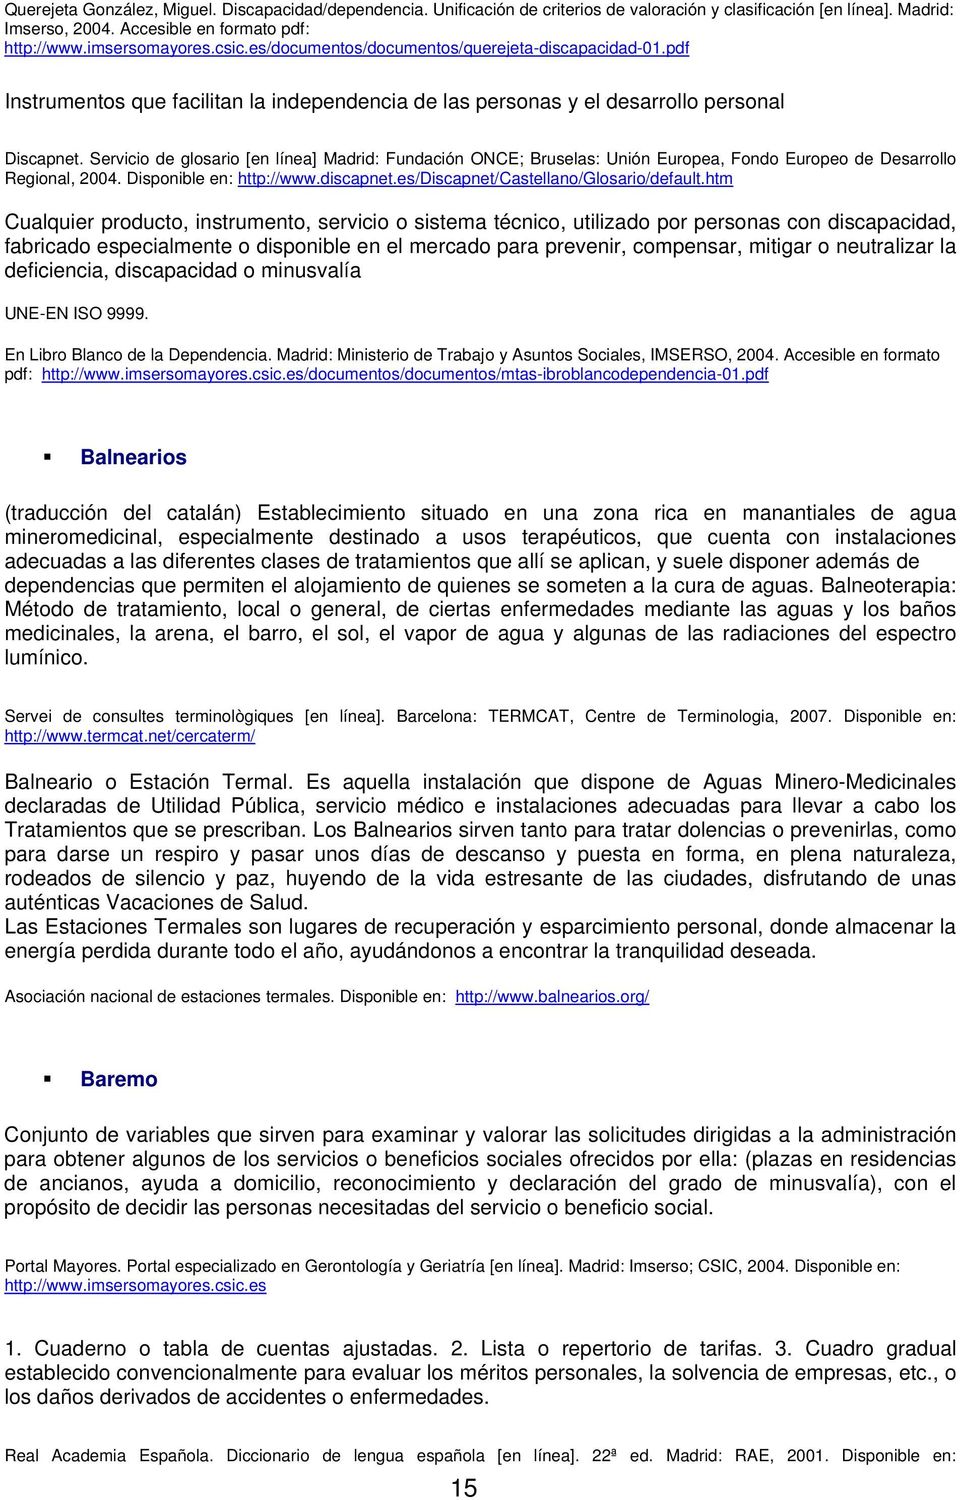 Servicio de glosario [en línea] Madrid: Fundación ONCE; Bruselas: Unión Europea, Fondo Europeo de Desarrollo Regional, 2004. Disponible en: http://www.discapnet.